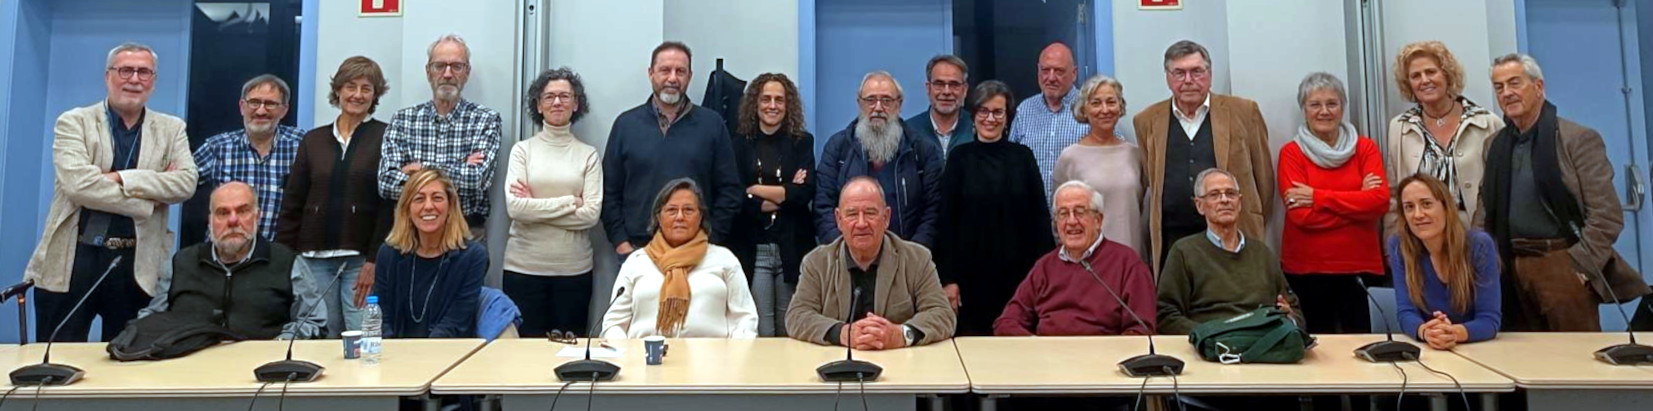 Comitè de Bioètica de Catalunya